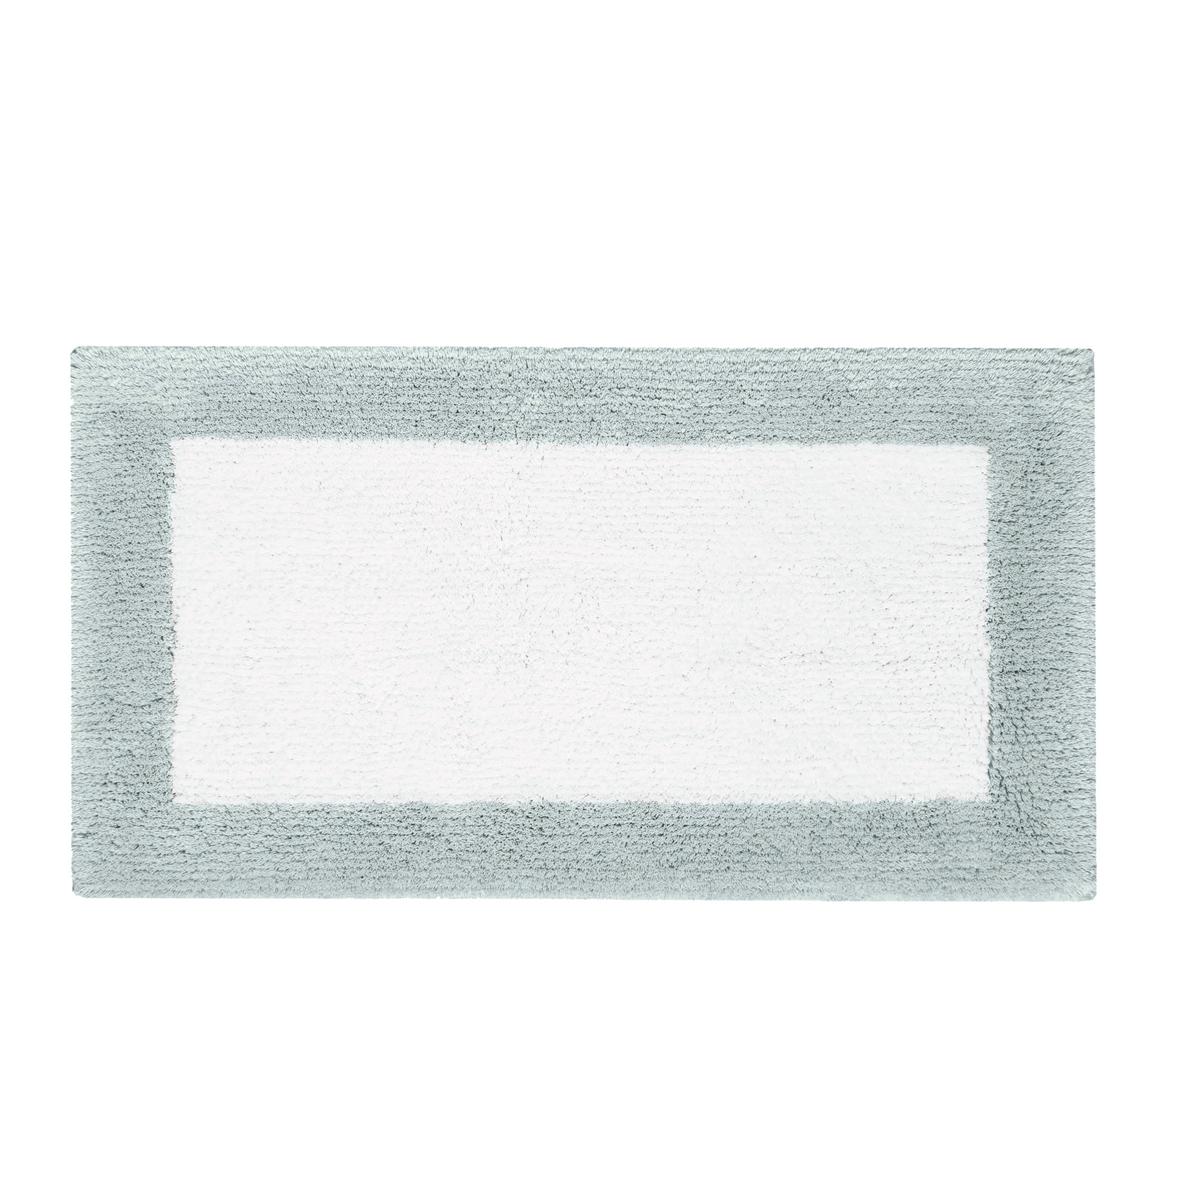 Clear Image of Graccioza Bicolore Bath Rugs in Sea Mist White